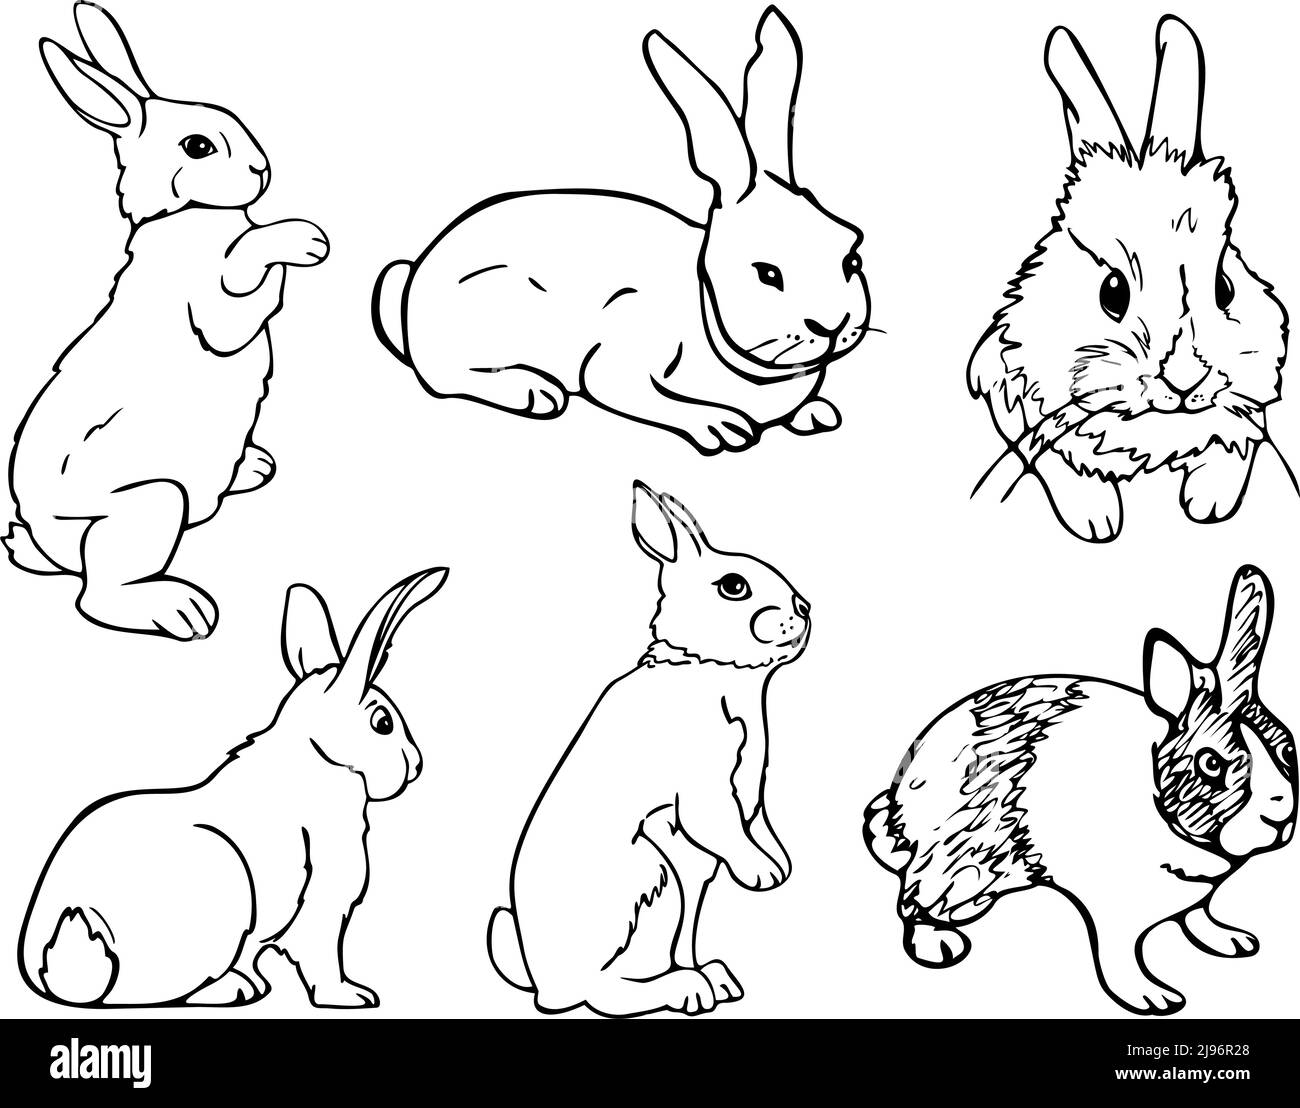 Schwarz weiß kaninchen Stock-Vektorgrafiken kaufen - Alamy